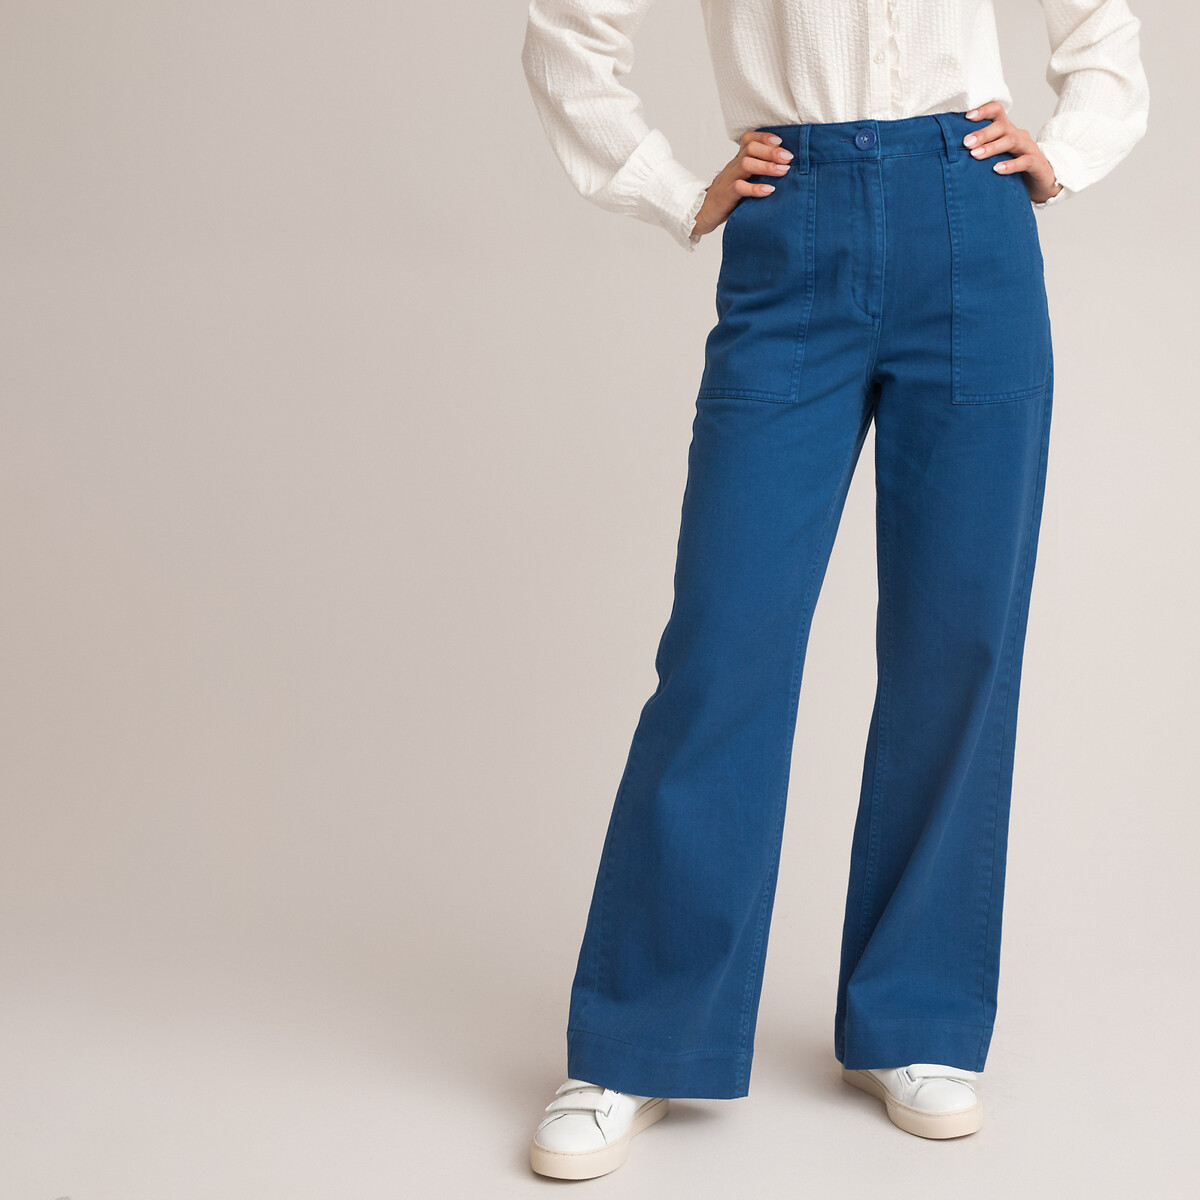 La Redoute Femme Vêtements Pantalons & Jeans Jeans Baggy & Large Jean évasé coupe classique 